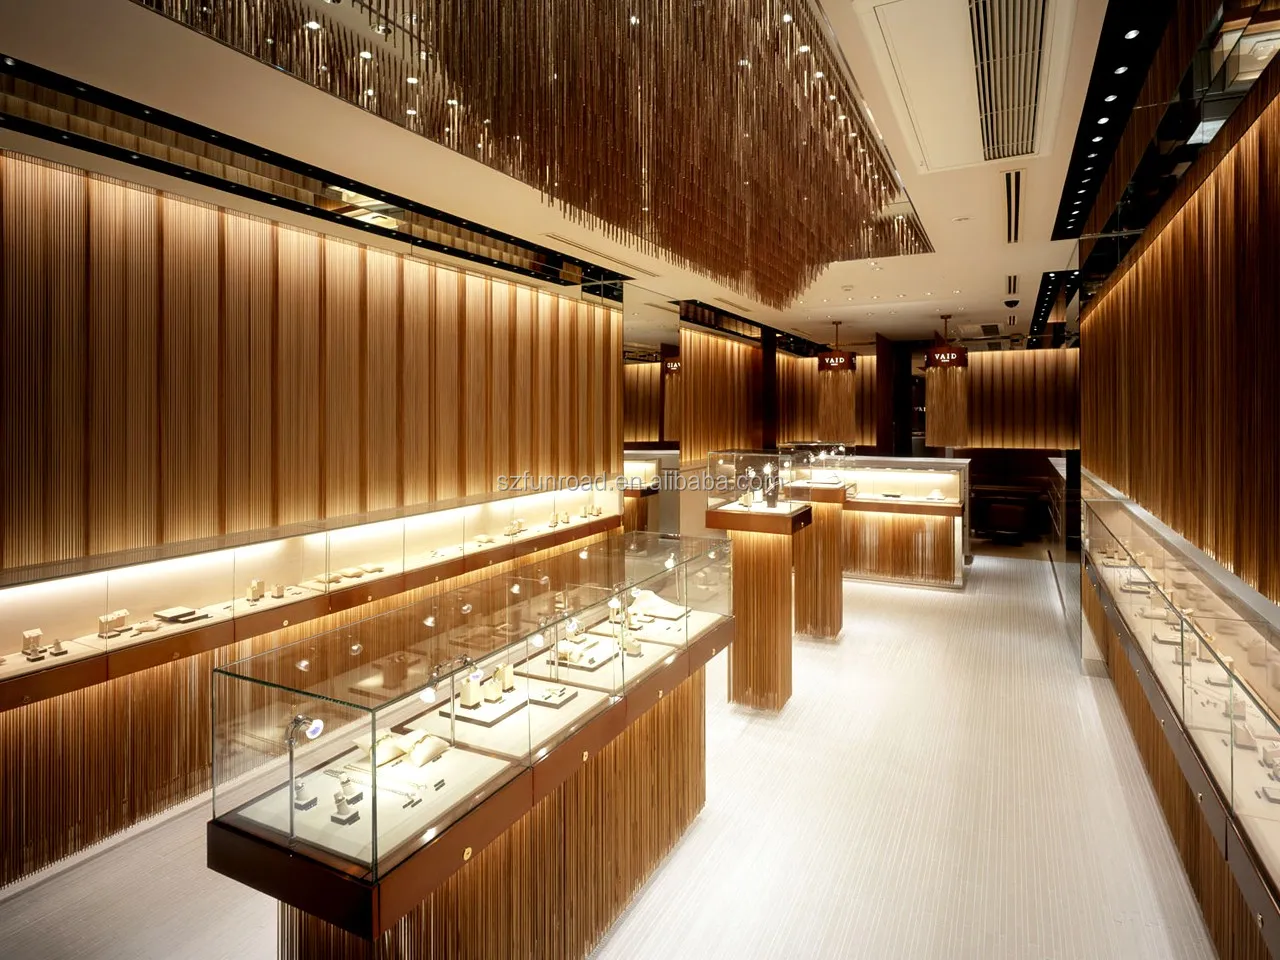 高端定制珠宝商店展示装饰金店的室内设计照亮接待处 